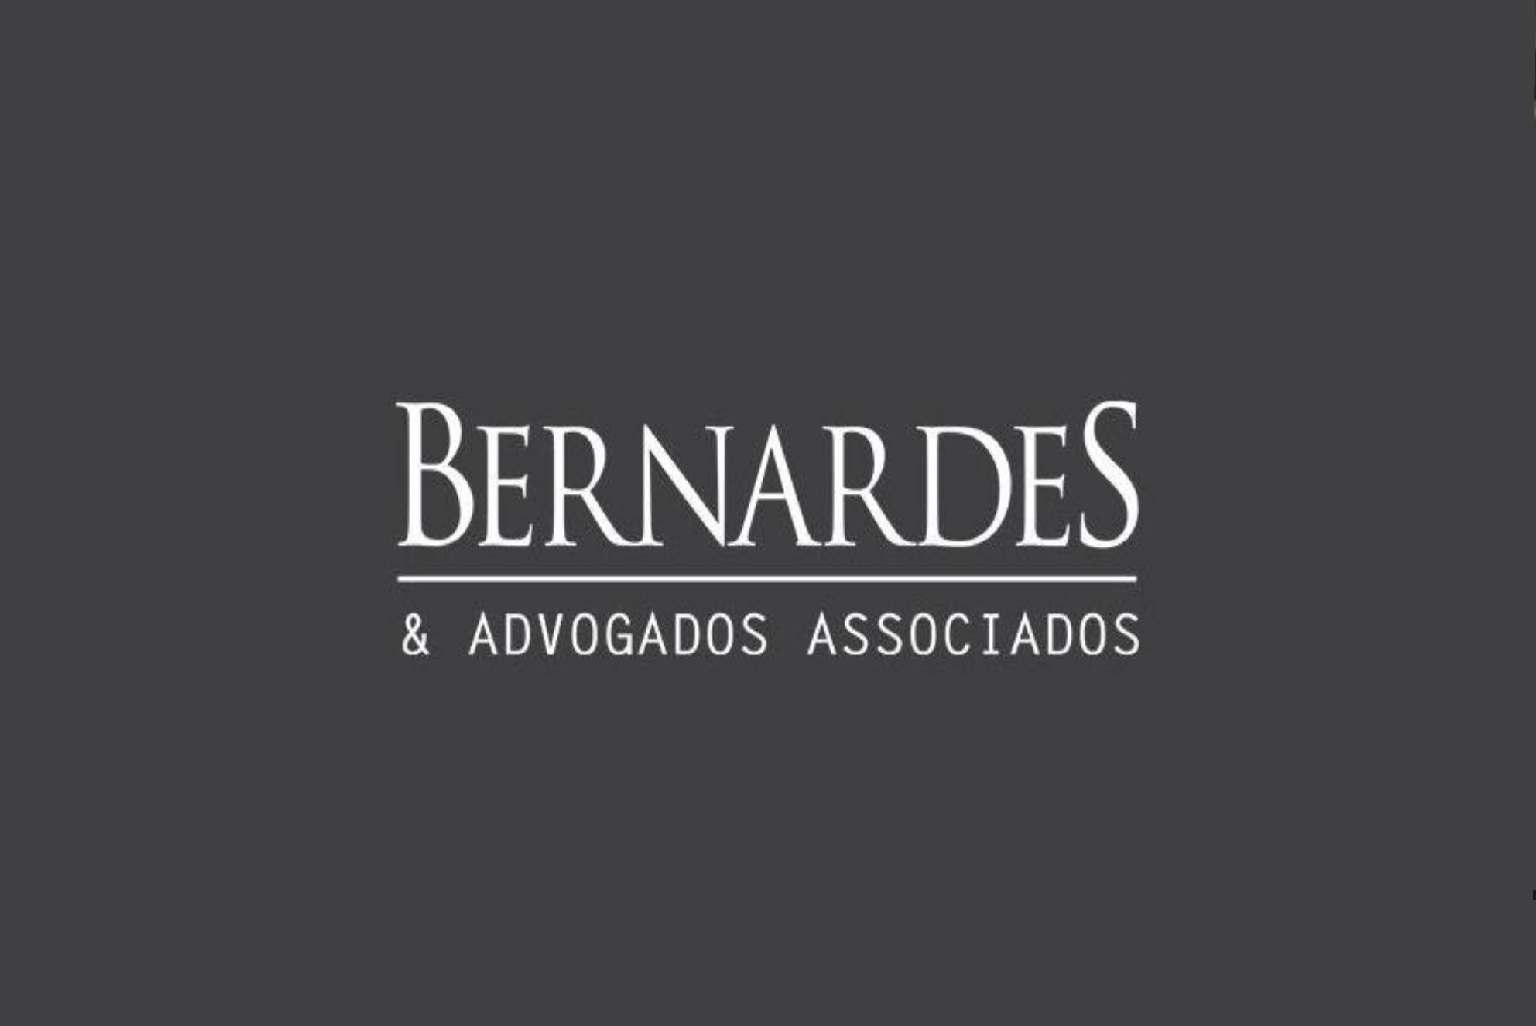 Alerta para golpes em nome da Bernardes & Advogados Associados